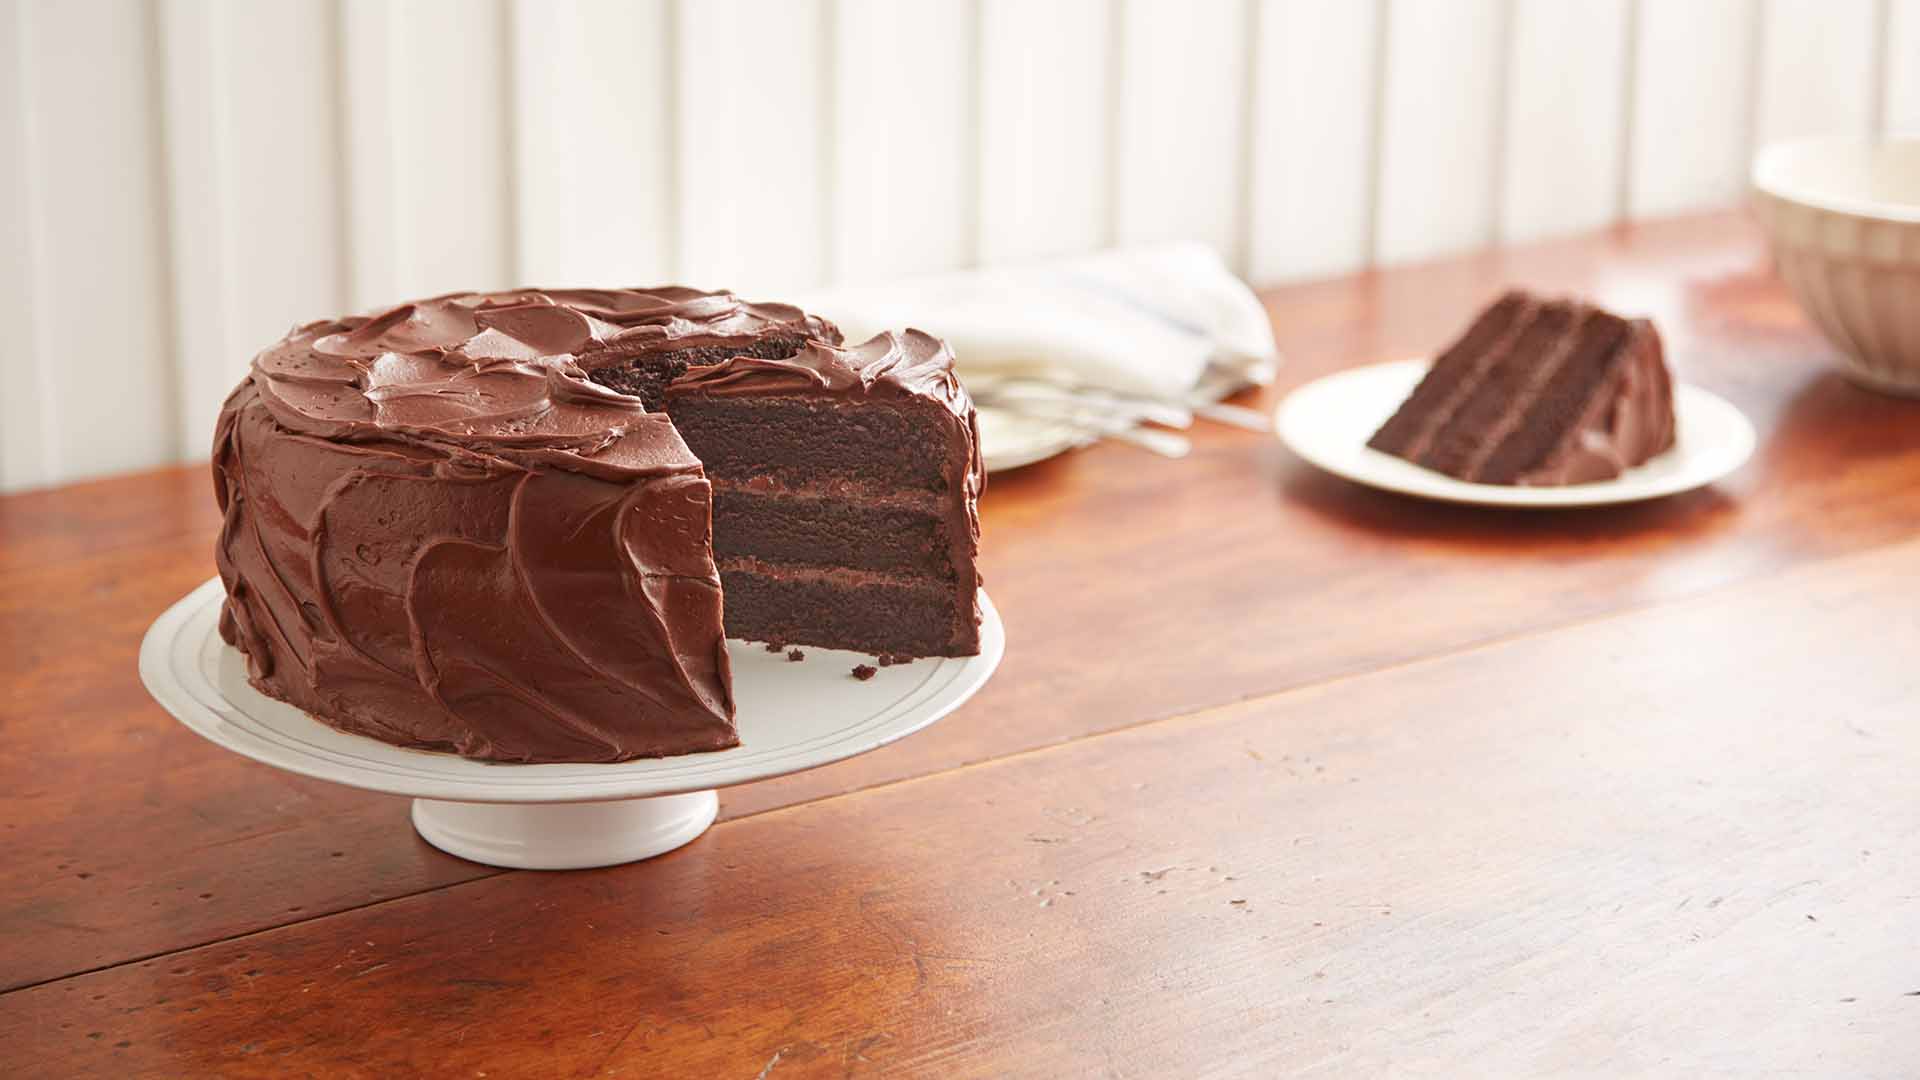 hersheys perfectly chocolate chocolate cake recipe